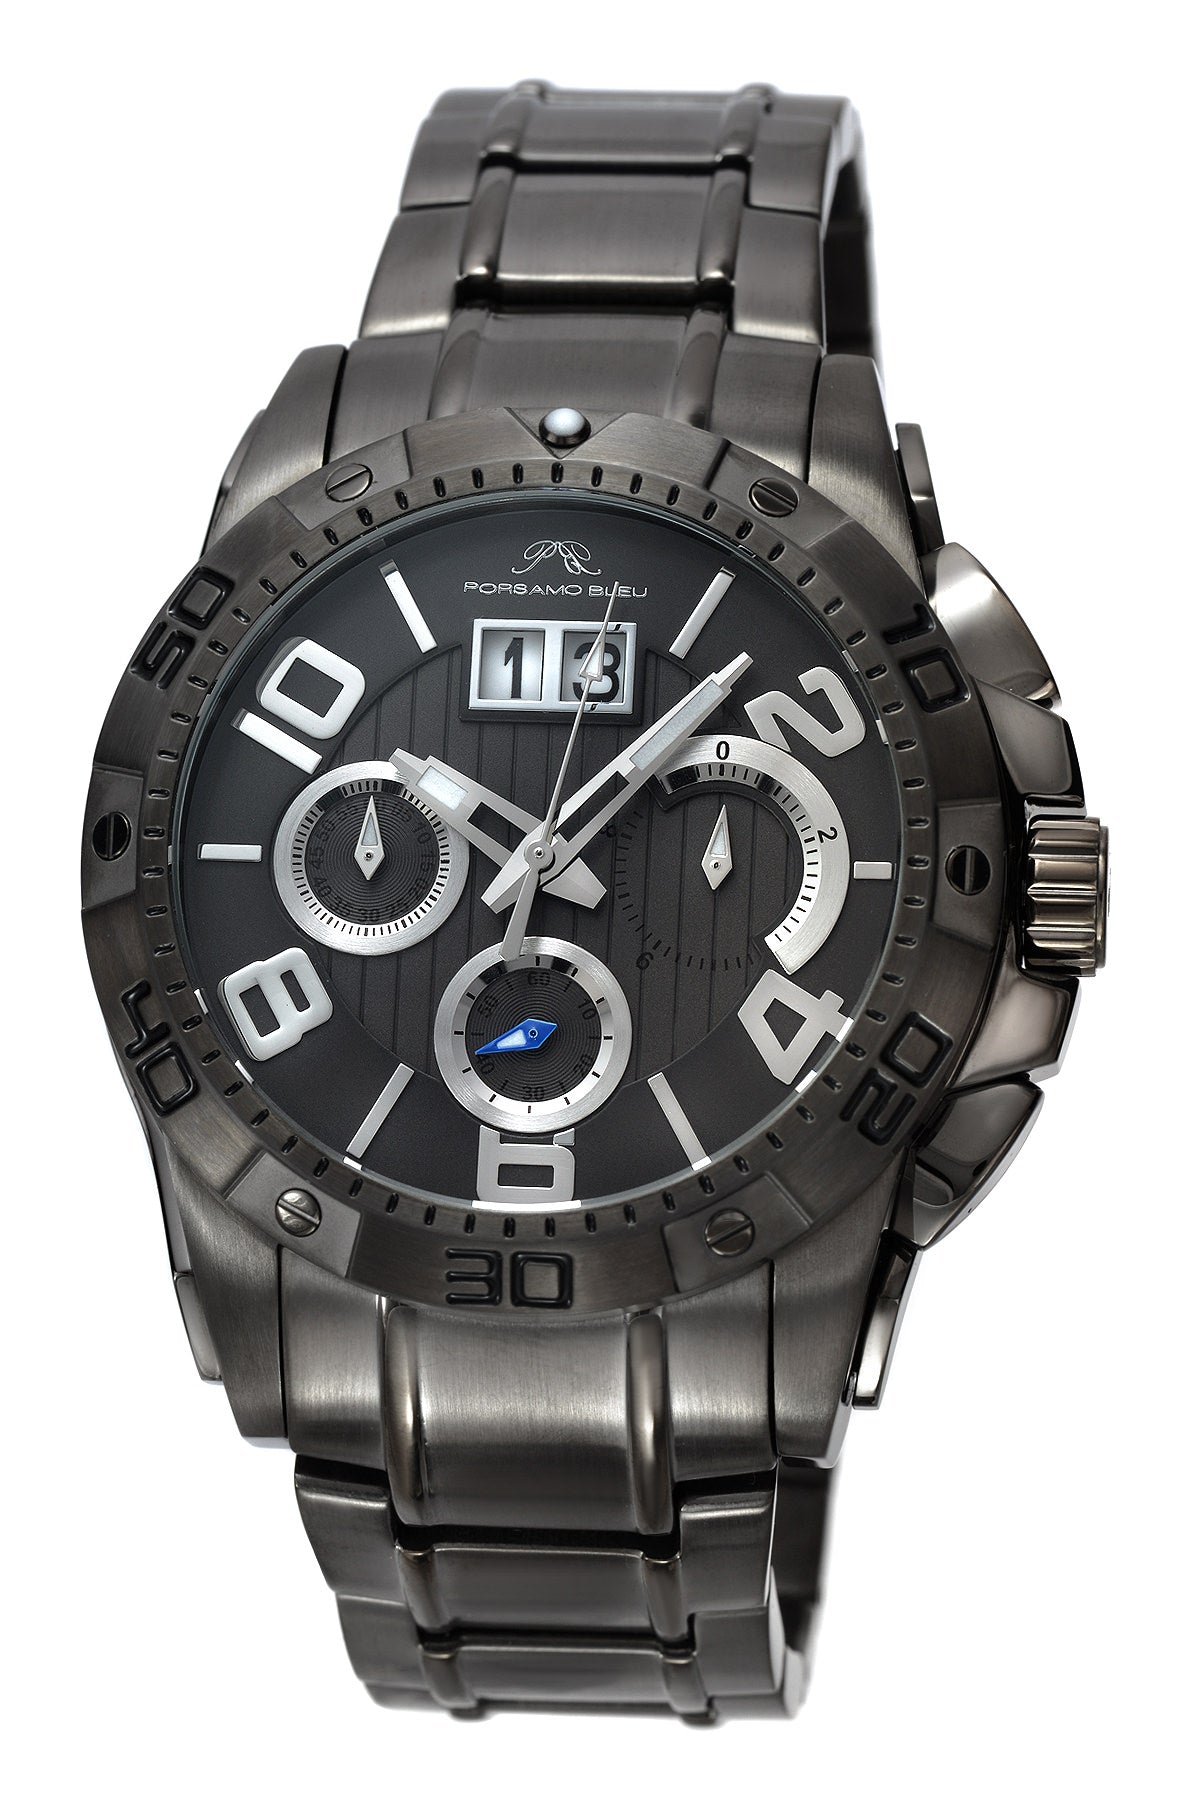 Porsamo Bleu Francoise Luxury Chronograph Men's Stainless Steel Watch, Silver, Black 242BFRS